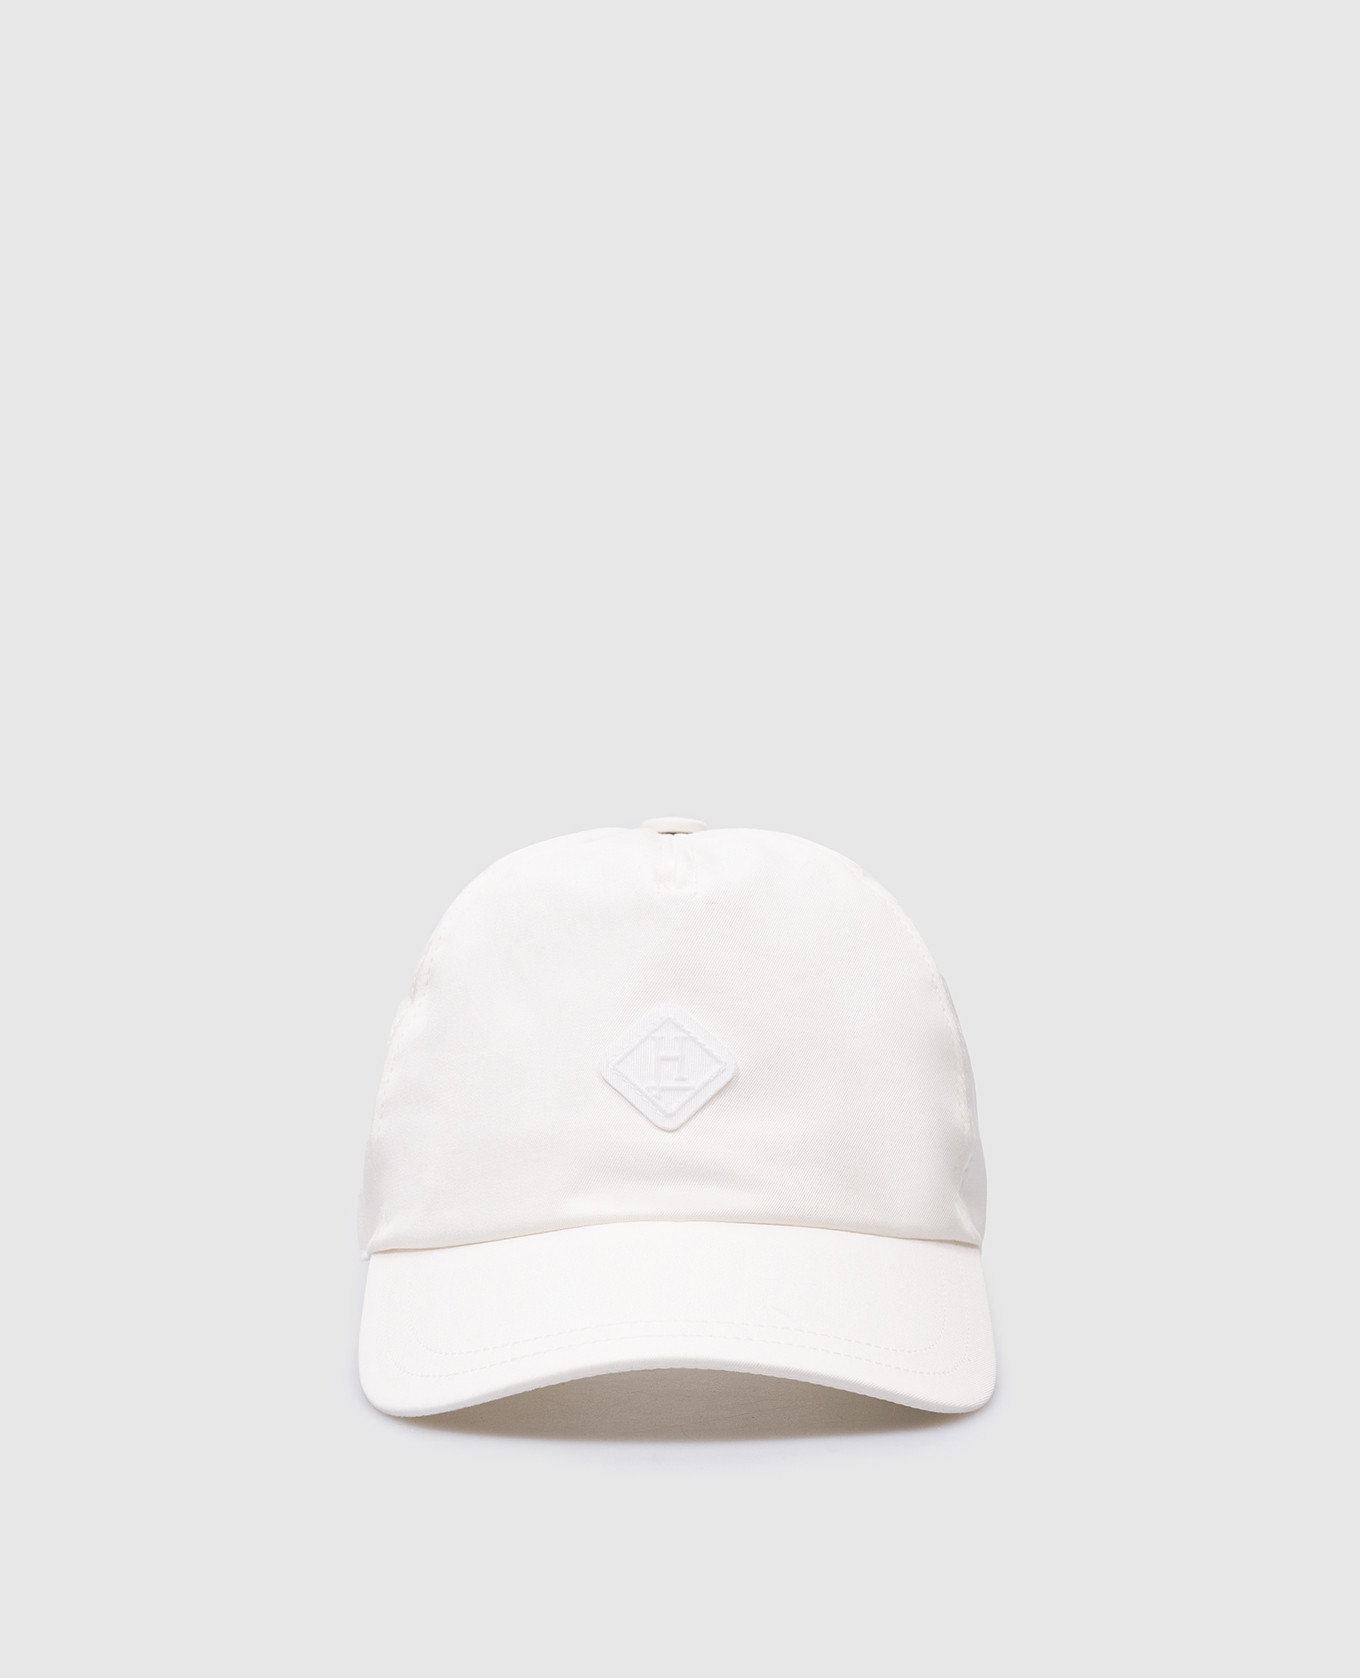 White cap with logo